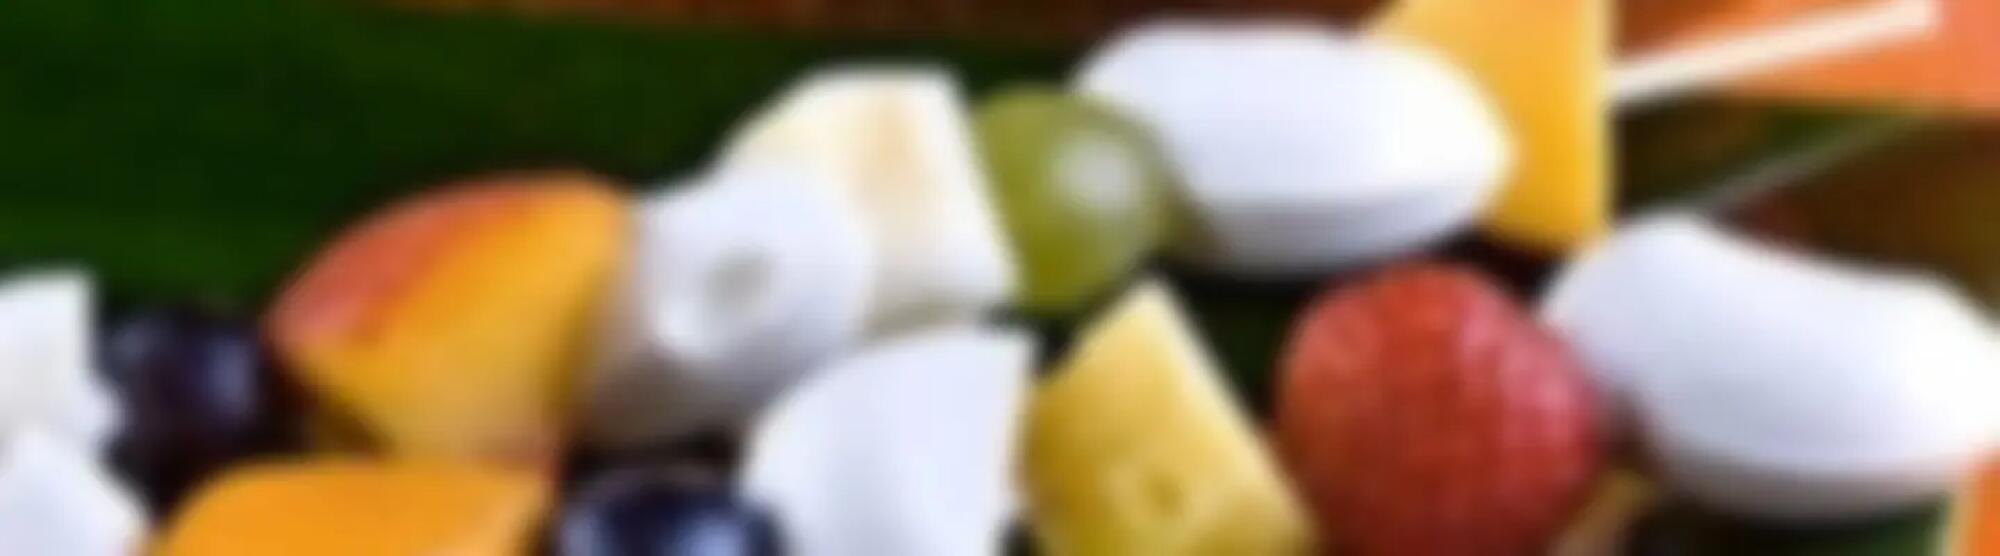 Recette : Brochettes de fromage frais aux fruits